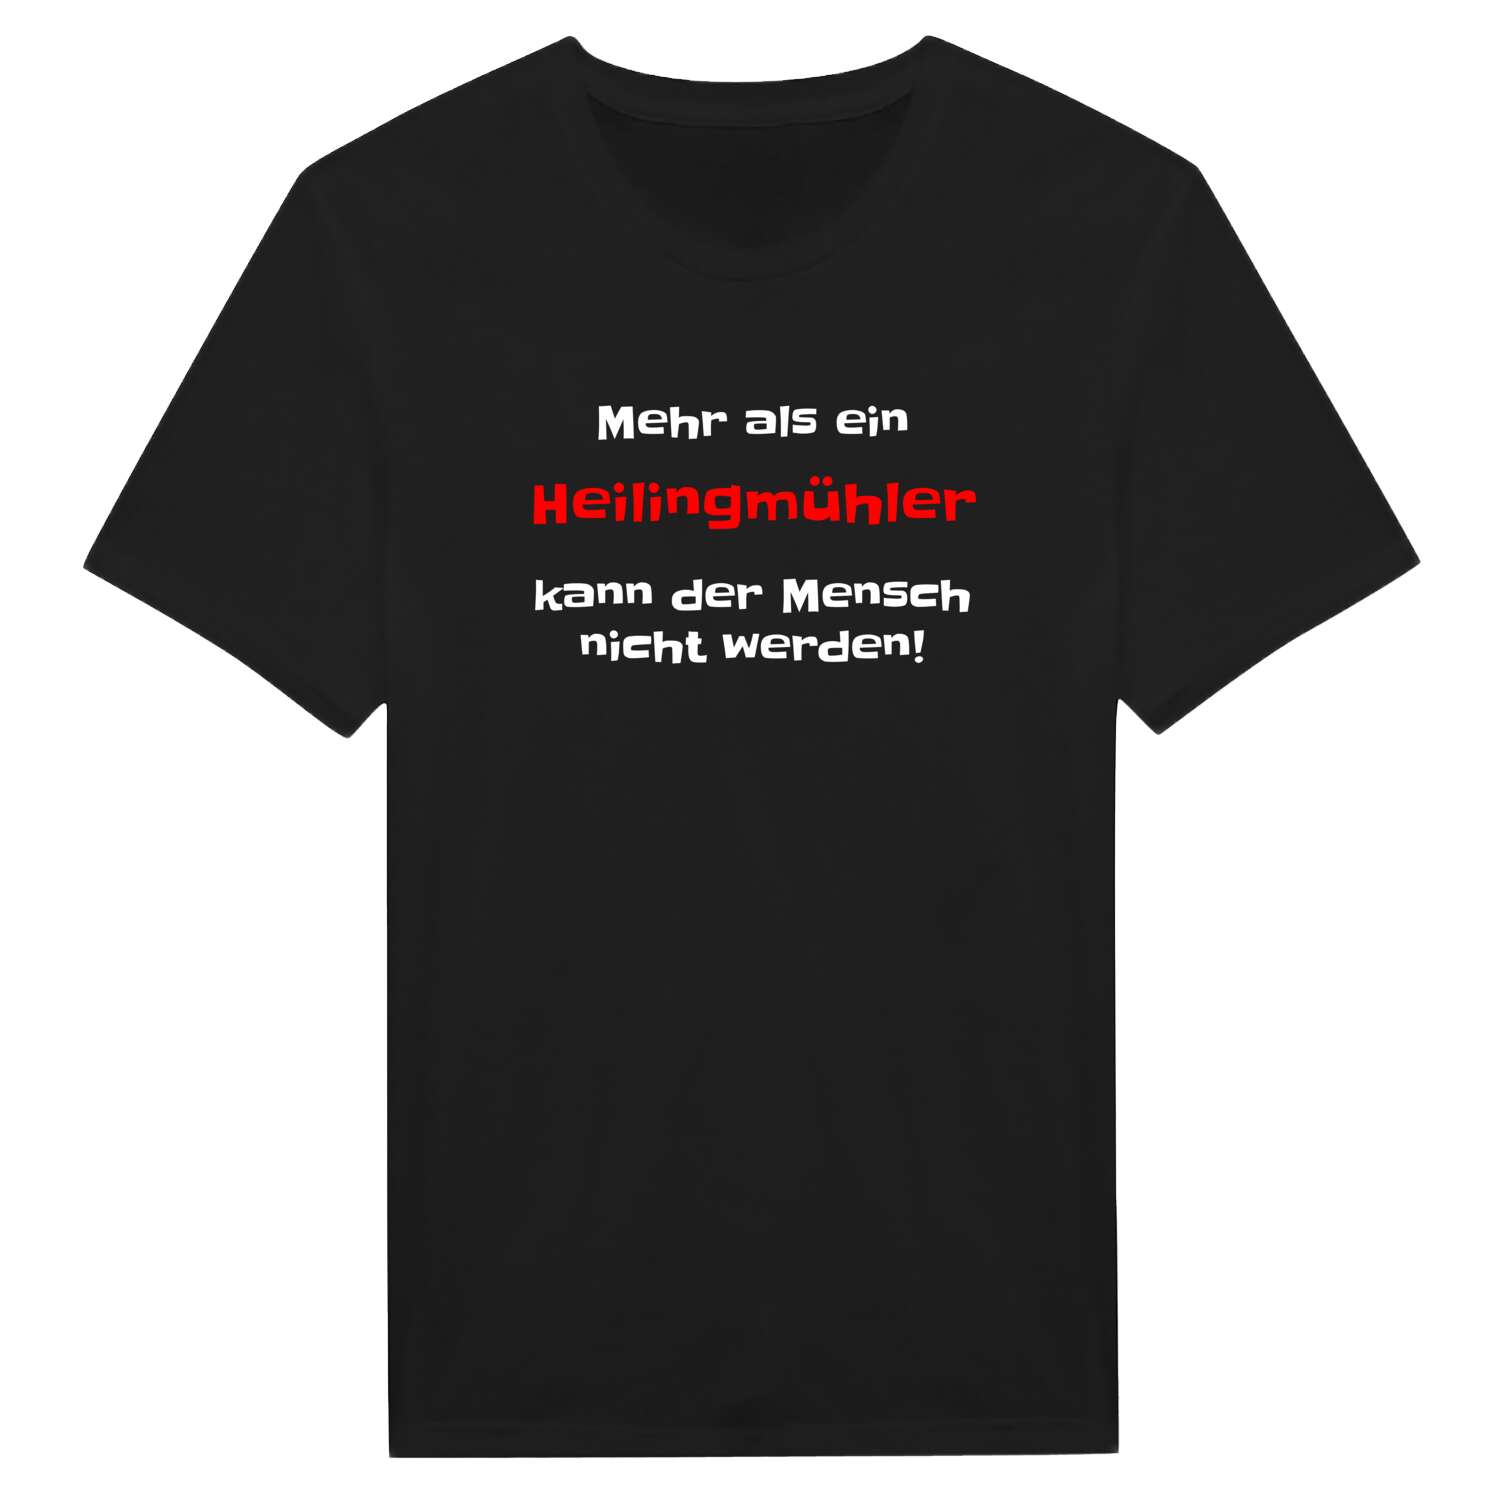 Heilingmühl T-Shirt »Mehr als ein«